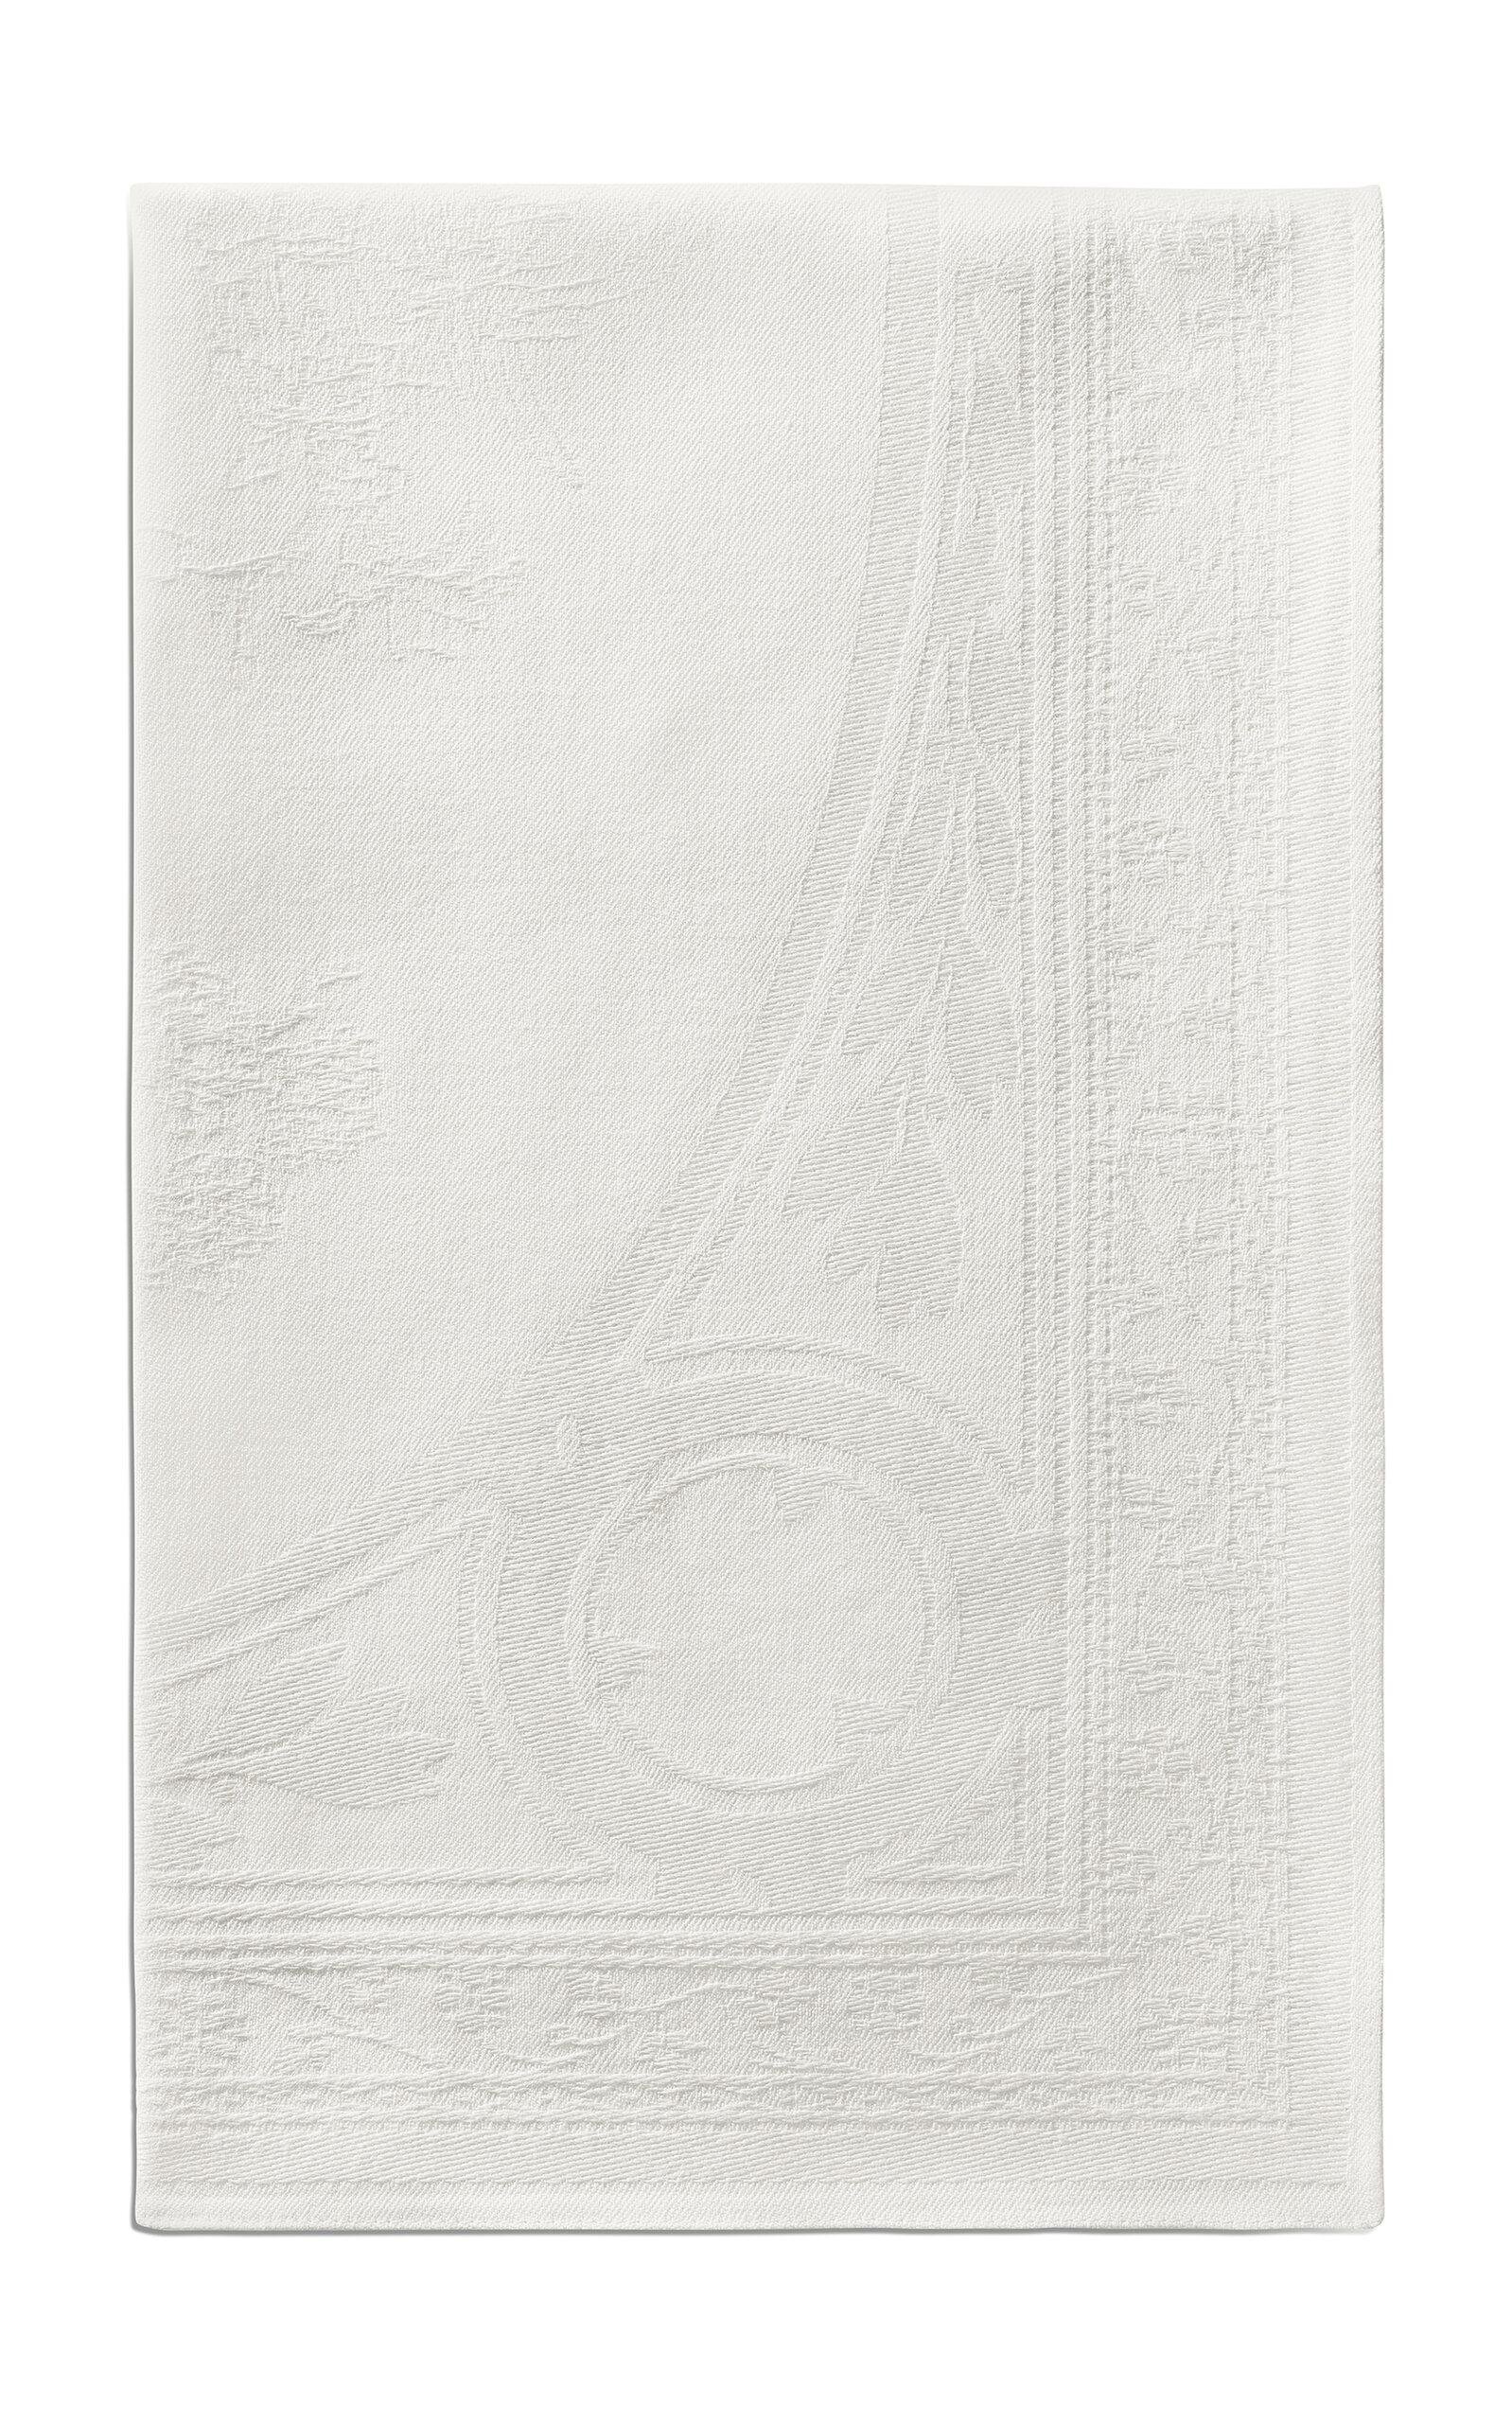 Tiffany & Co. - Crest Embroidered-Linen Napkin - White - Moda Operandi by TIFFANY&CO.